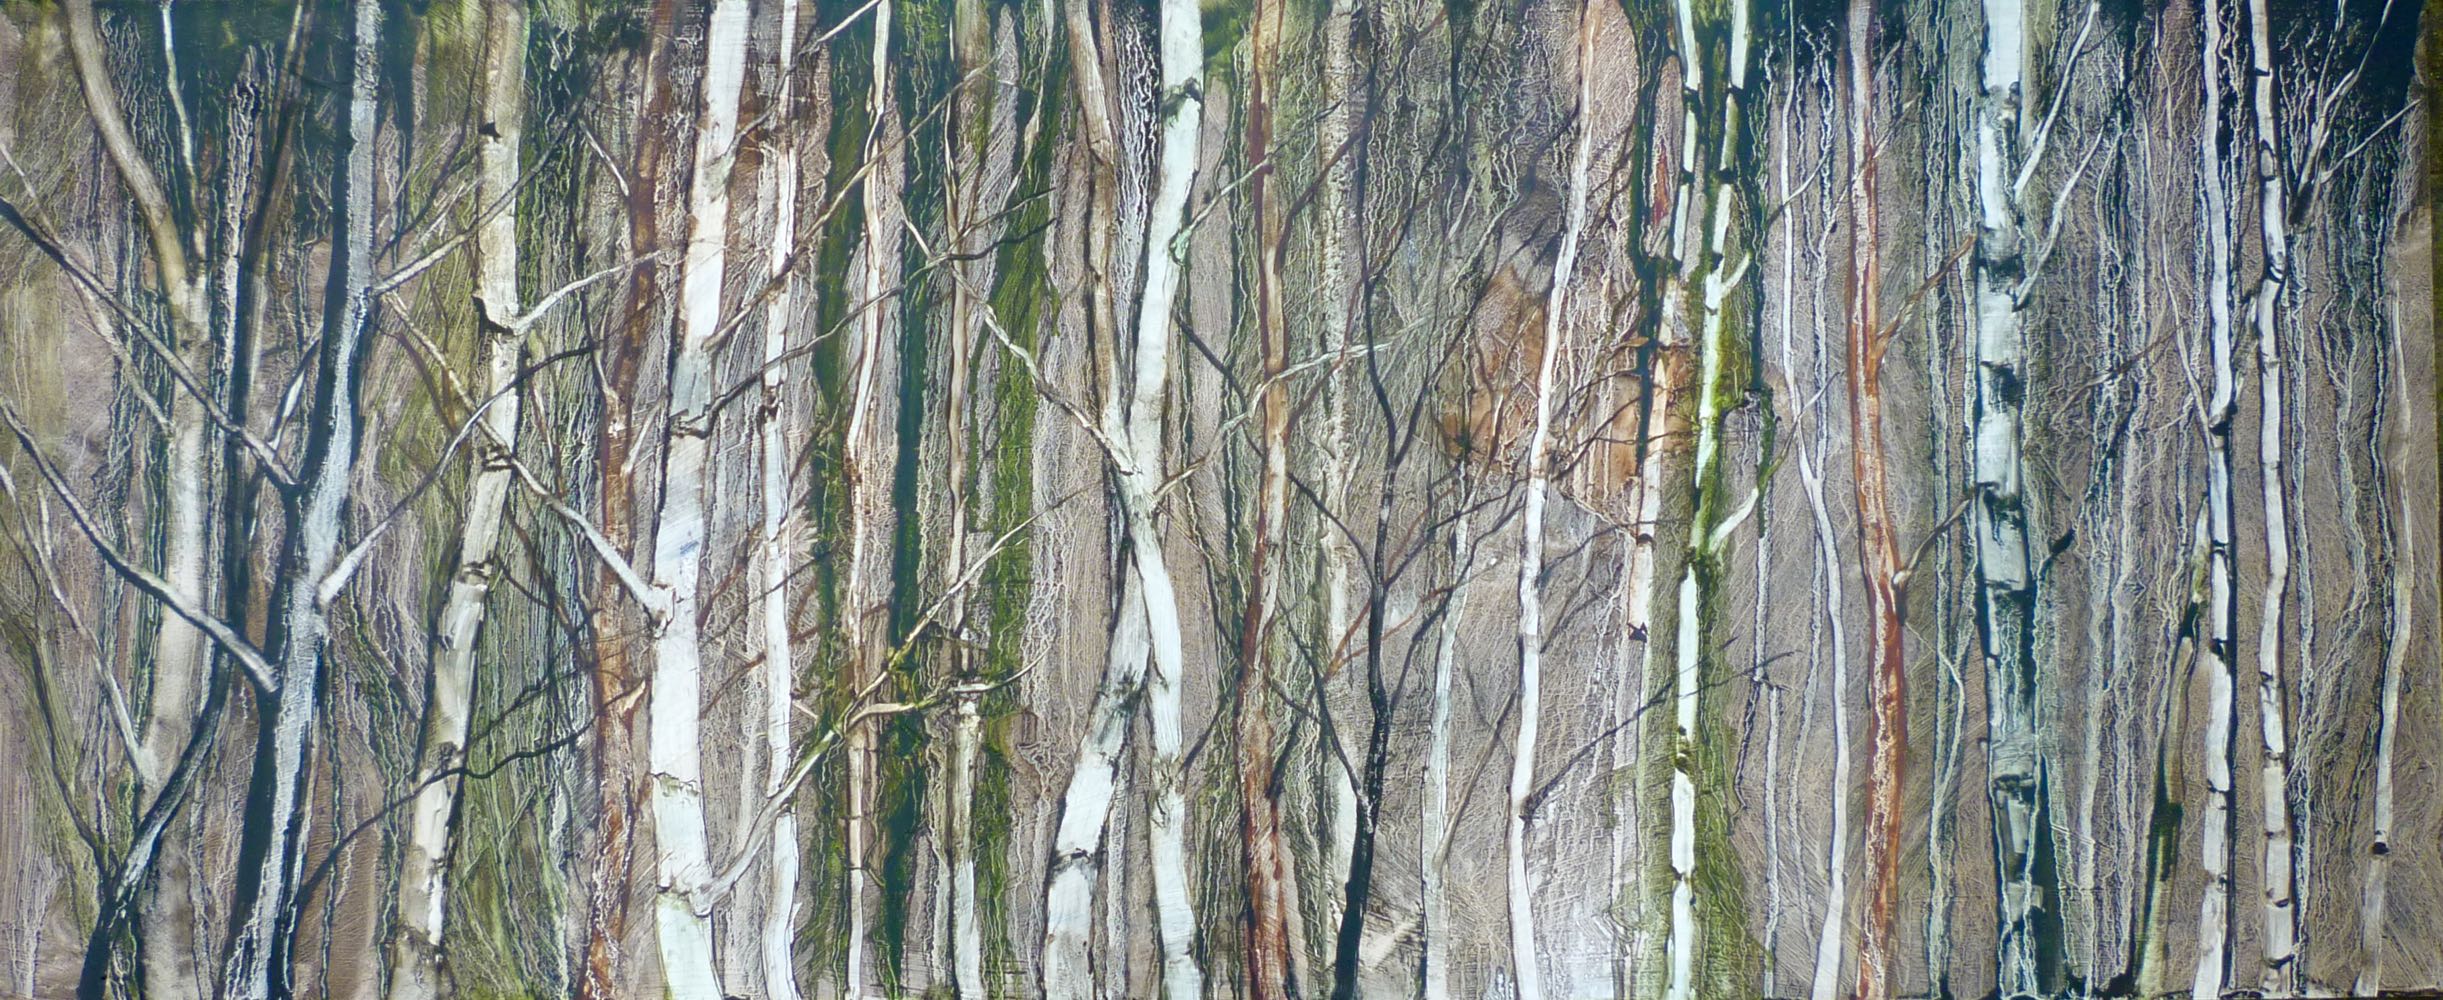 Deep inside the birch forest  